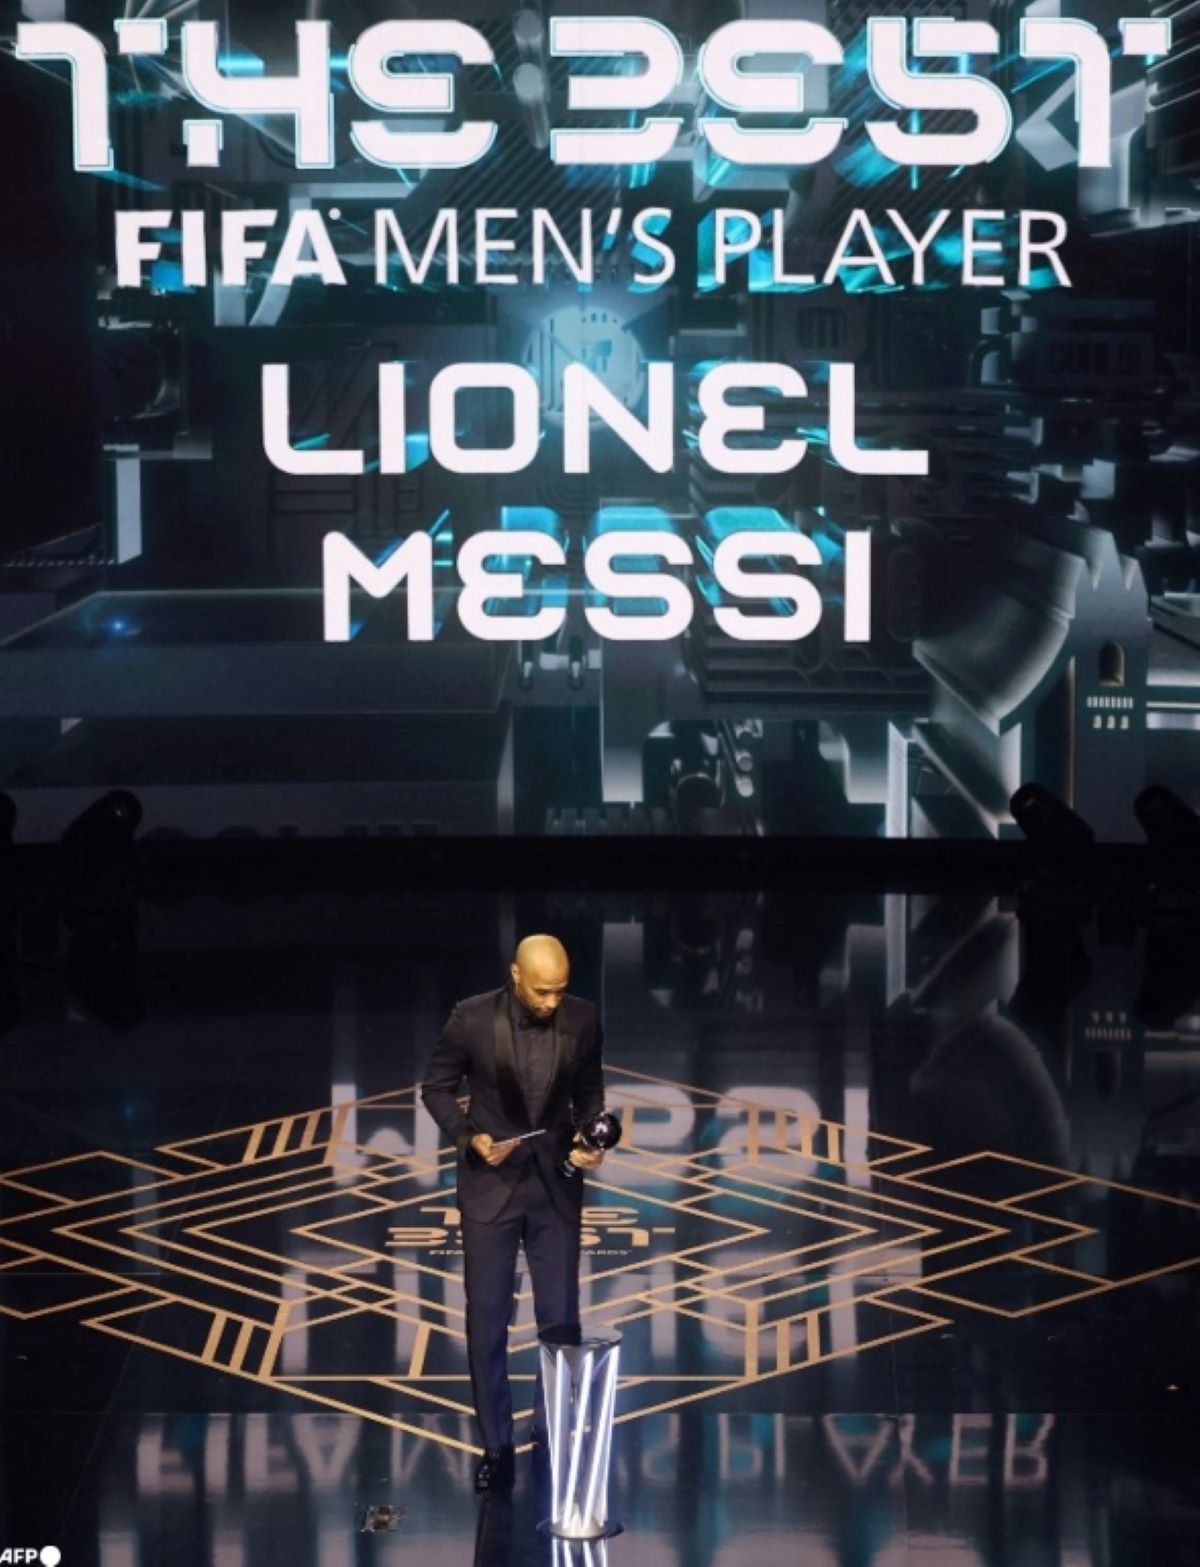 Lionel Messi ganó The Best - noticiacn